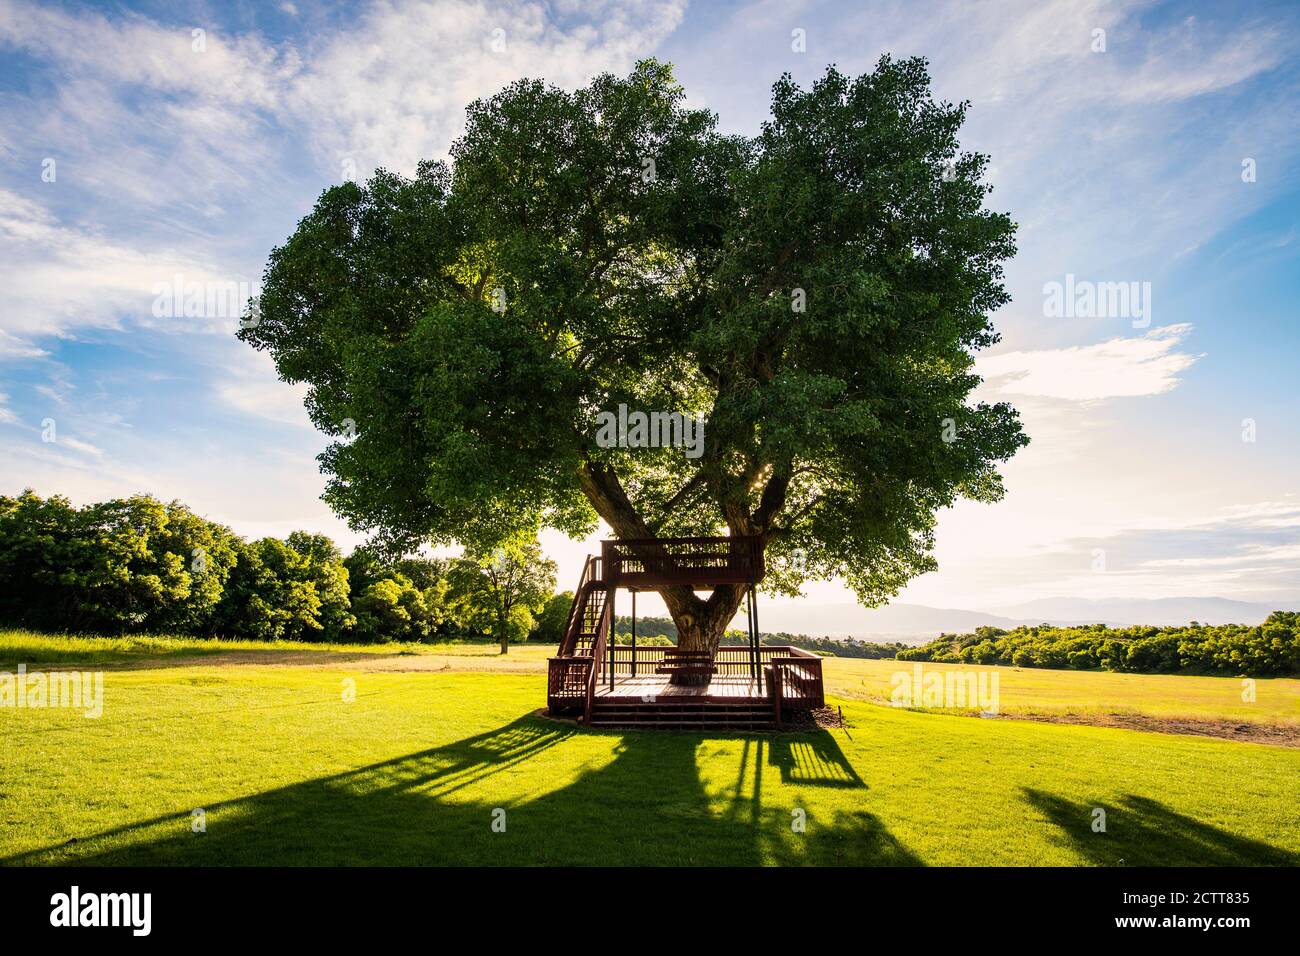 Estados Unidos, Utah, Salem, árbol grande con casa de madera Foto de stock